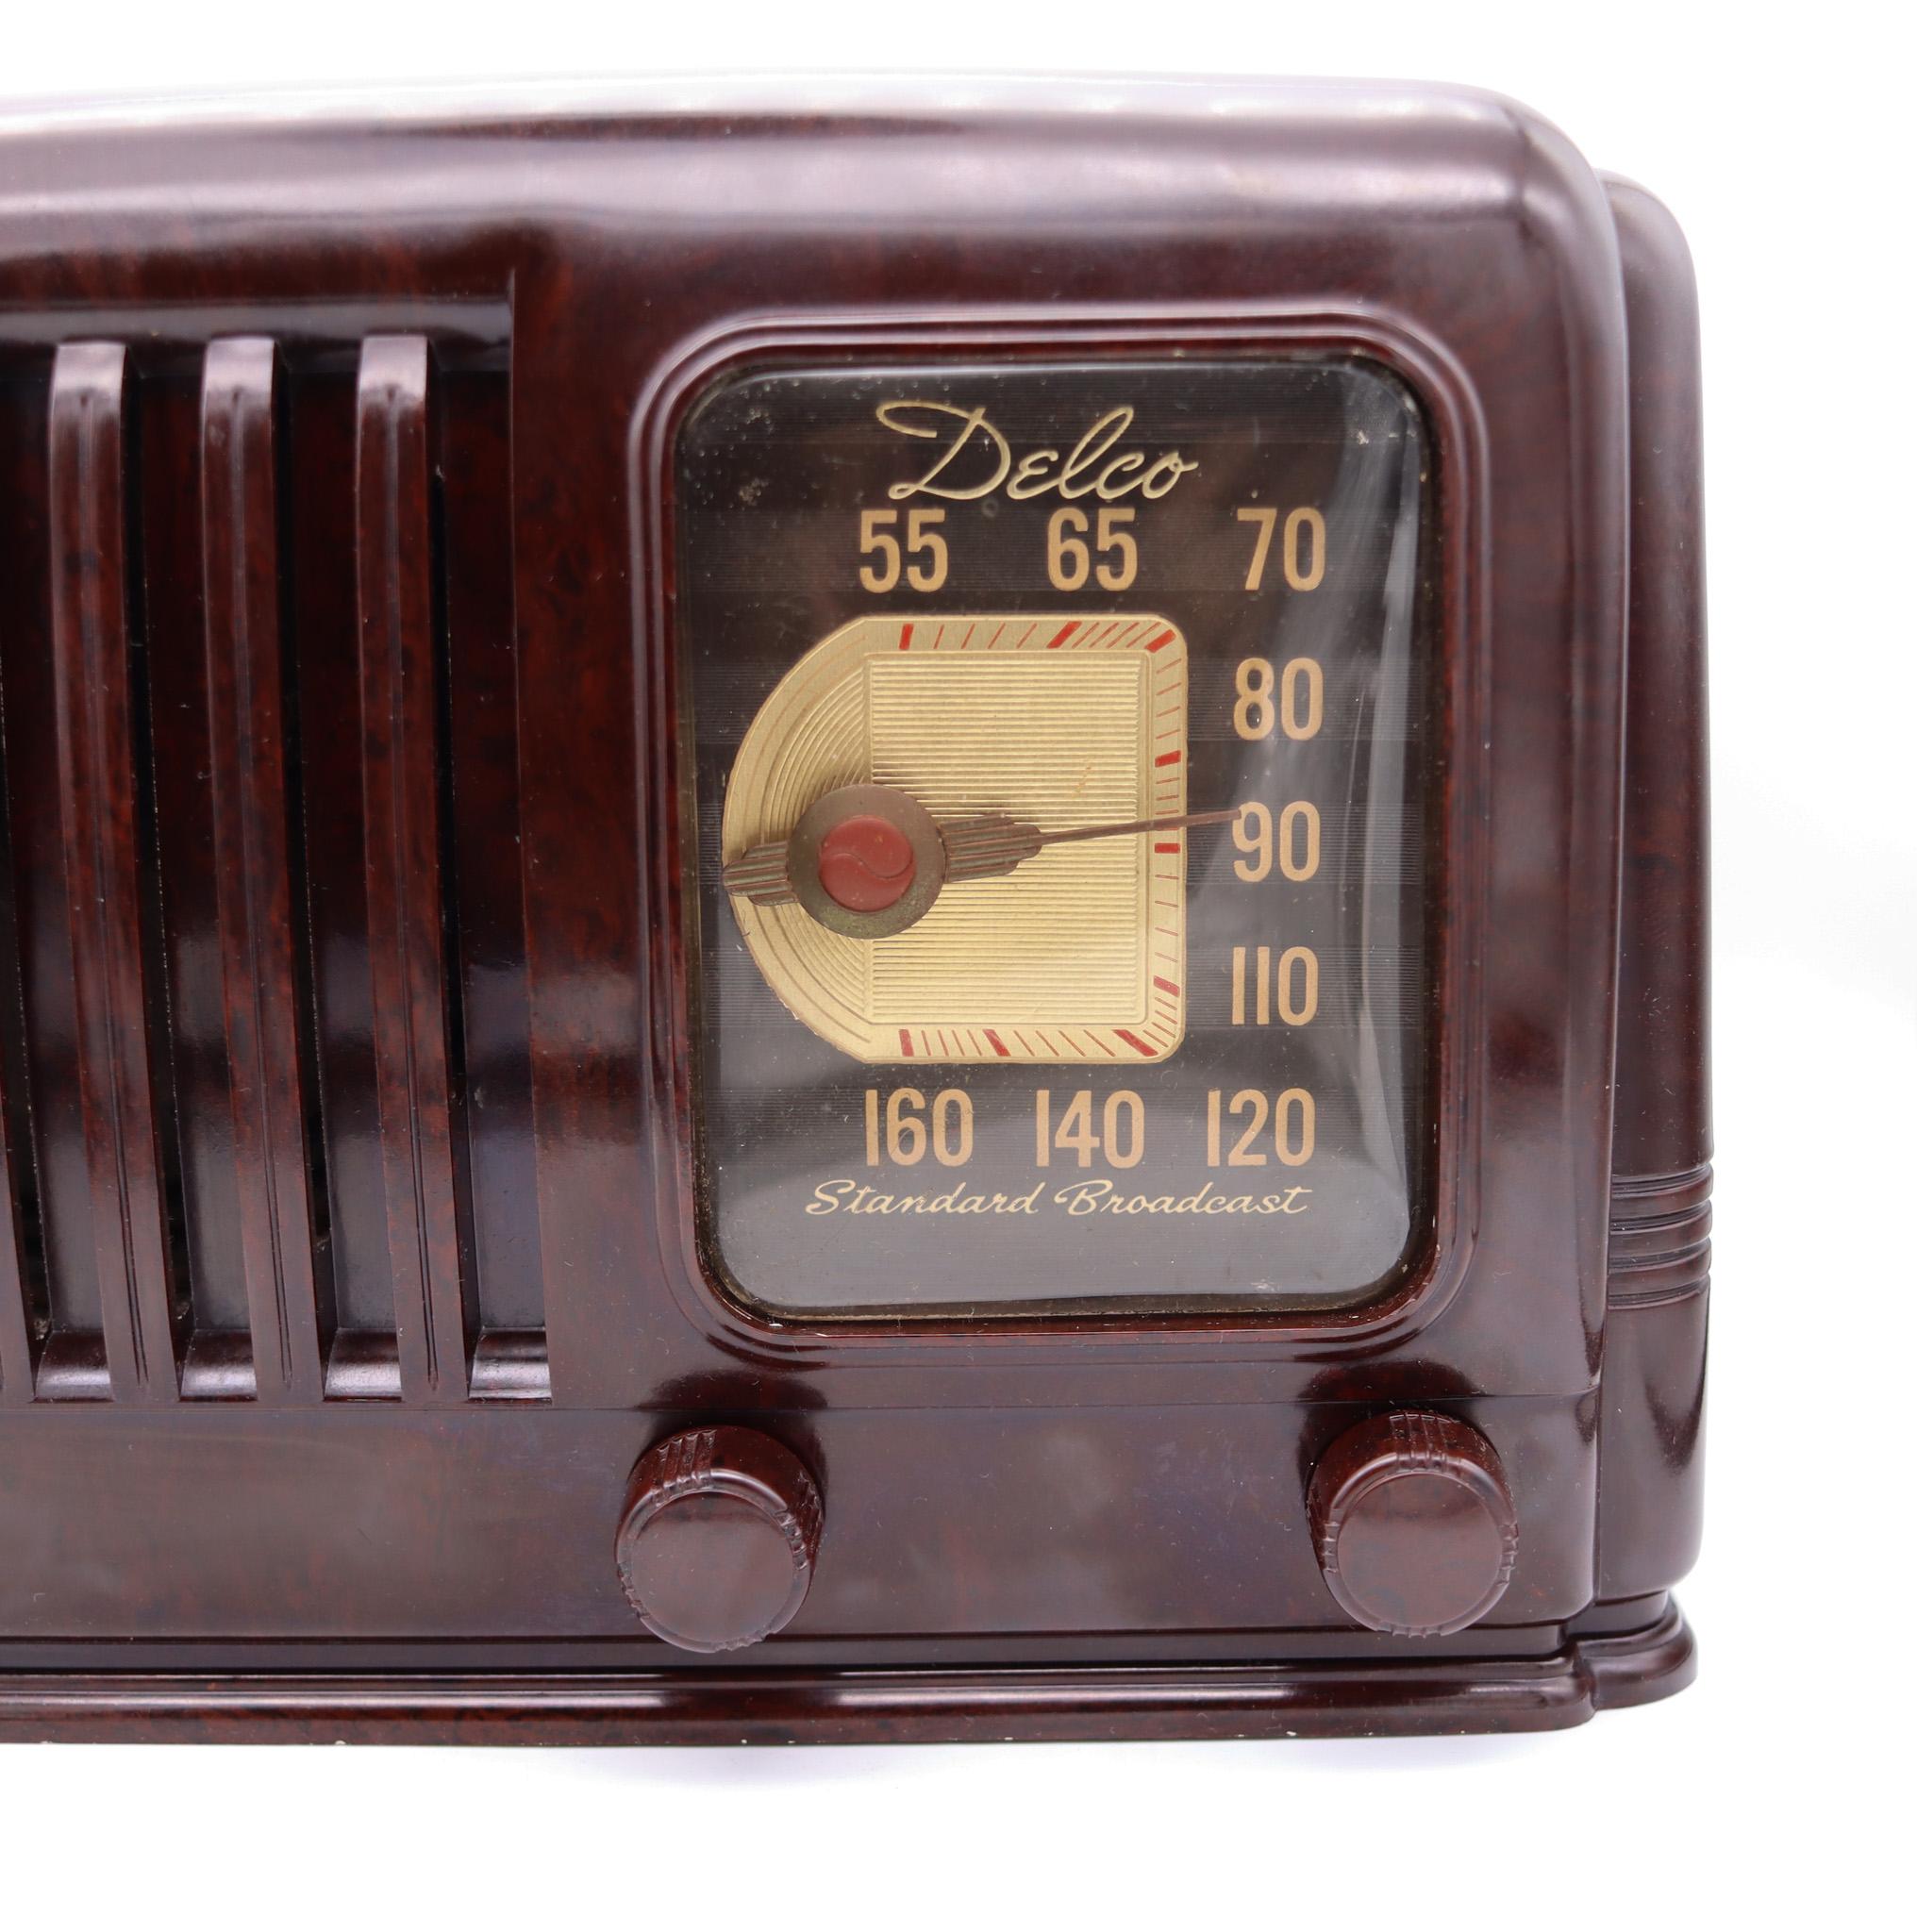 Une radio à tubes de style Art déco conçue par Delco.

Nous proposons ici une radio à tubes de table Delco modèle R-1171 de 1941 absolument magnifique. Il est doté d'un superbe boîtier en bakélite marbrée brun foncé, d'un cadran attrayant, d'une